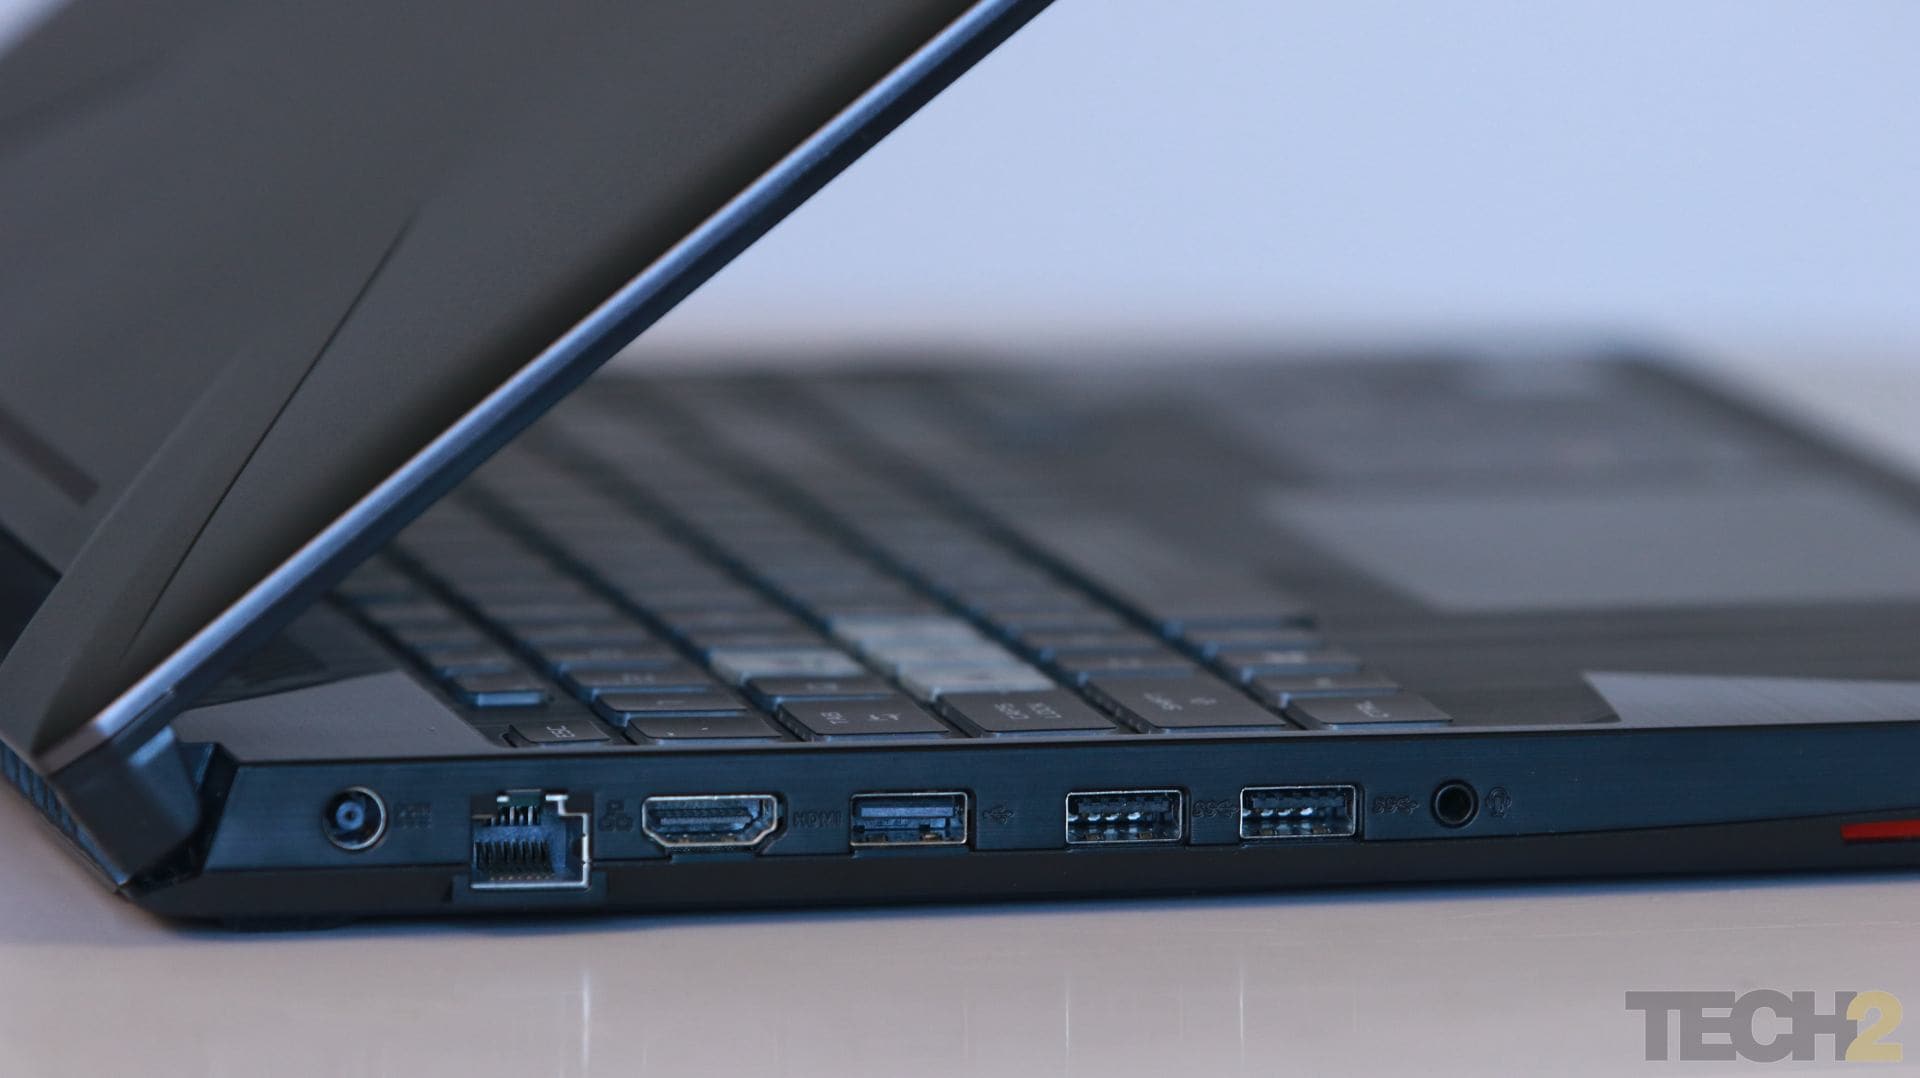 The laptop has enough connectivity options. Image: tech2/Omkar